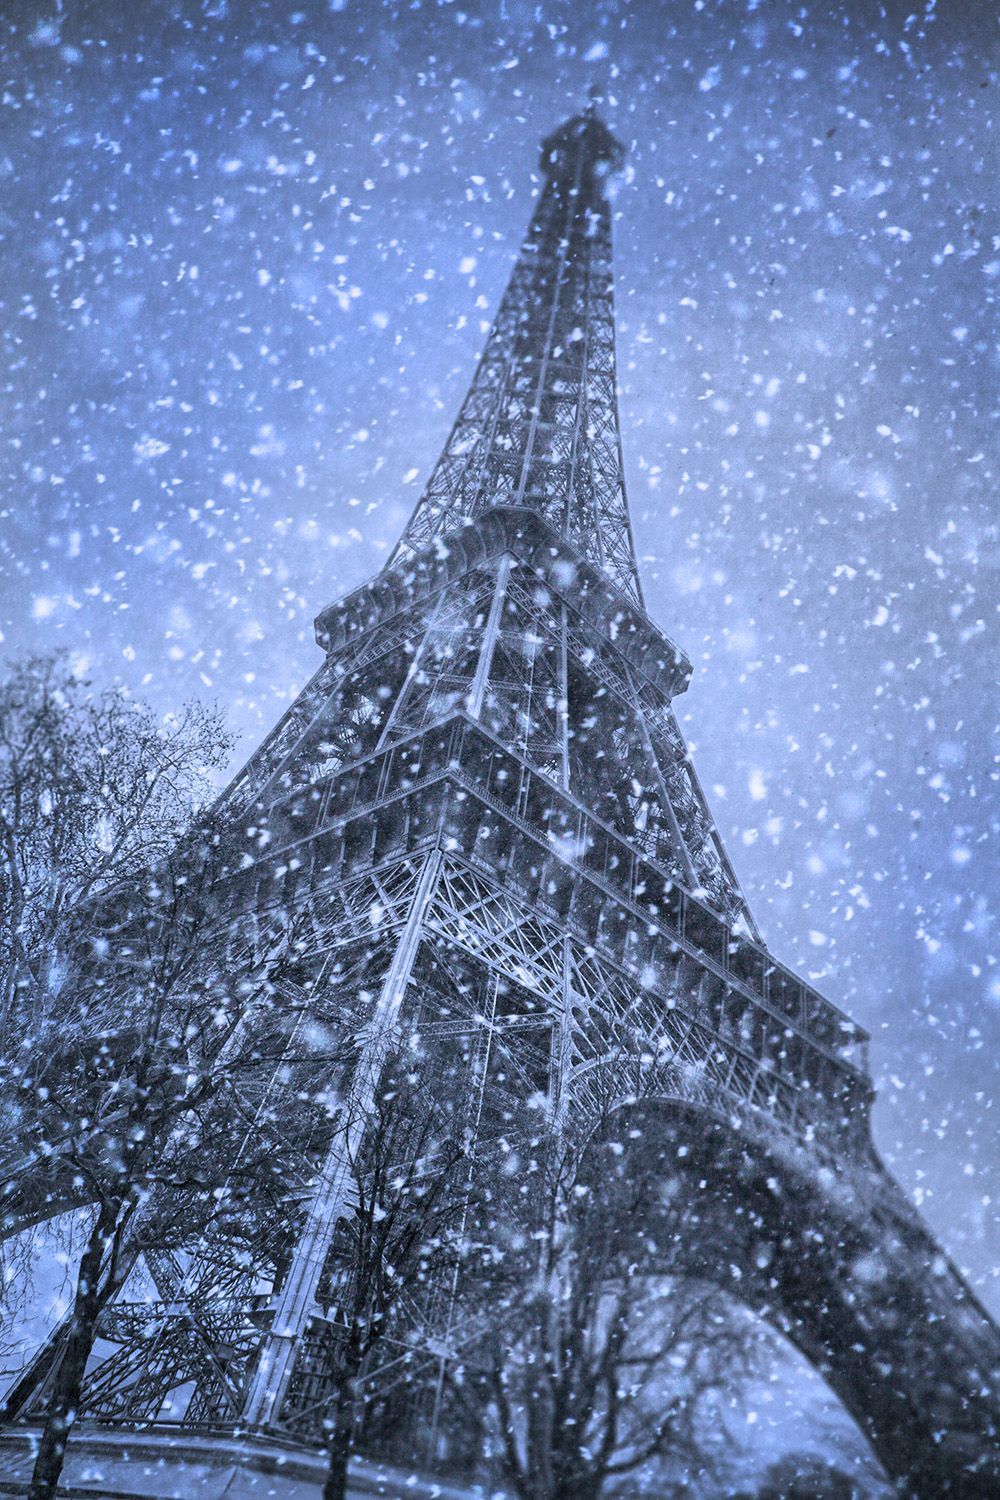 Rough Guides Blog. Travel Guide and Travel Information. Paris winter, Paris picture, Paris wallpaper